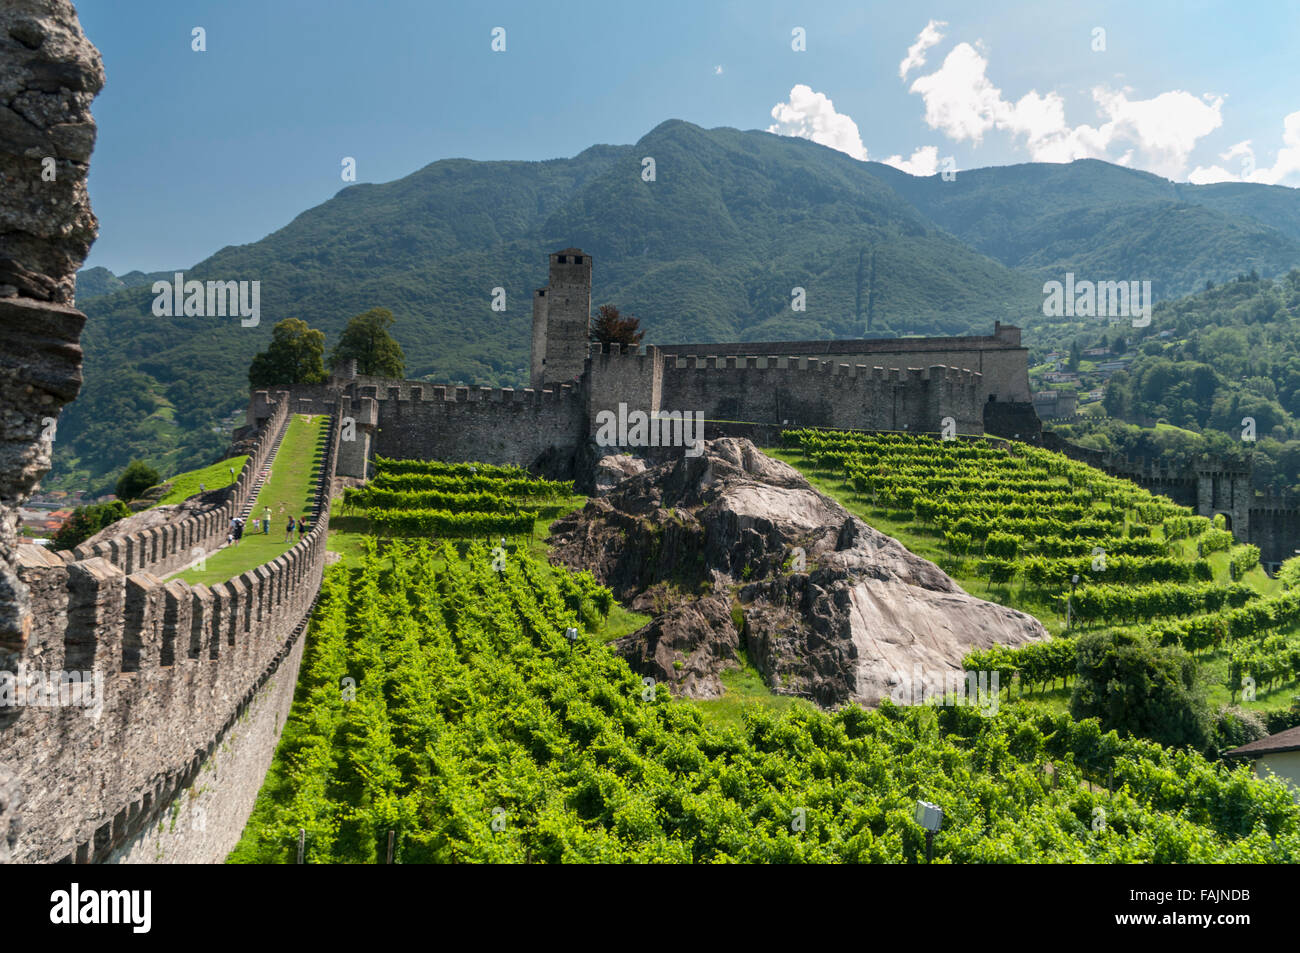 Weinberge und Mauern mit Zinnen des Castelgrande, eines der UNESCO-Welterbe-Schlösser in Bellinzona, Tessin, Schweiz. Stockfoto